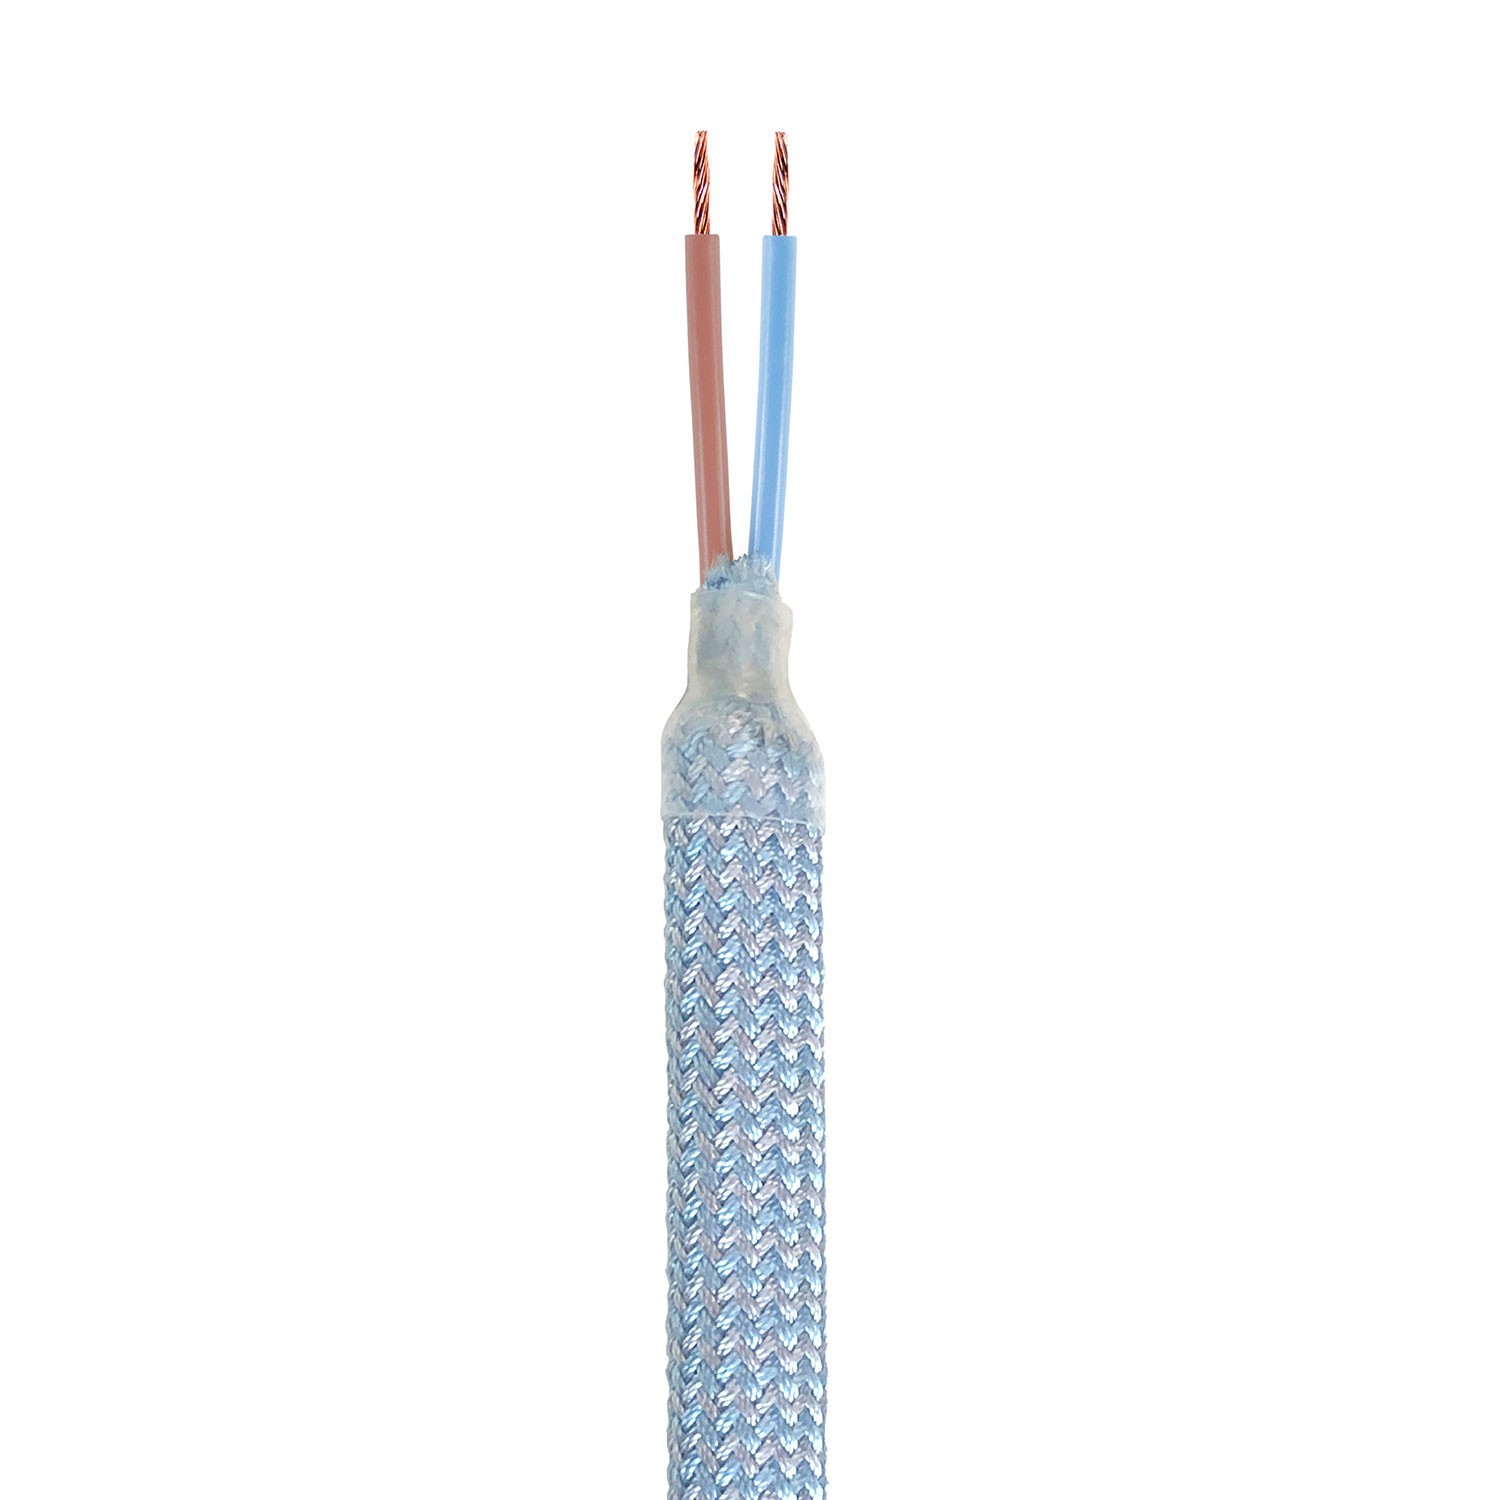 Creative Flex tubo flexible recubierto de tela azul bebé RM76